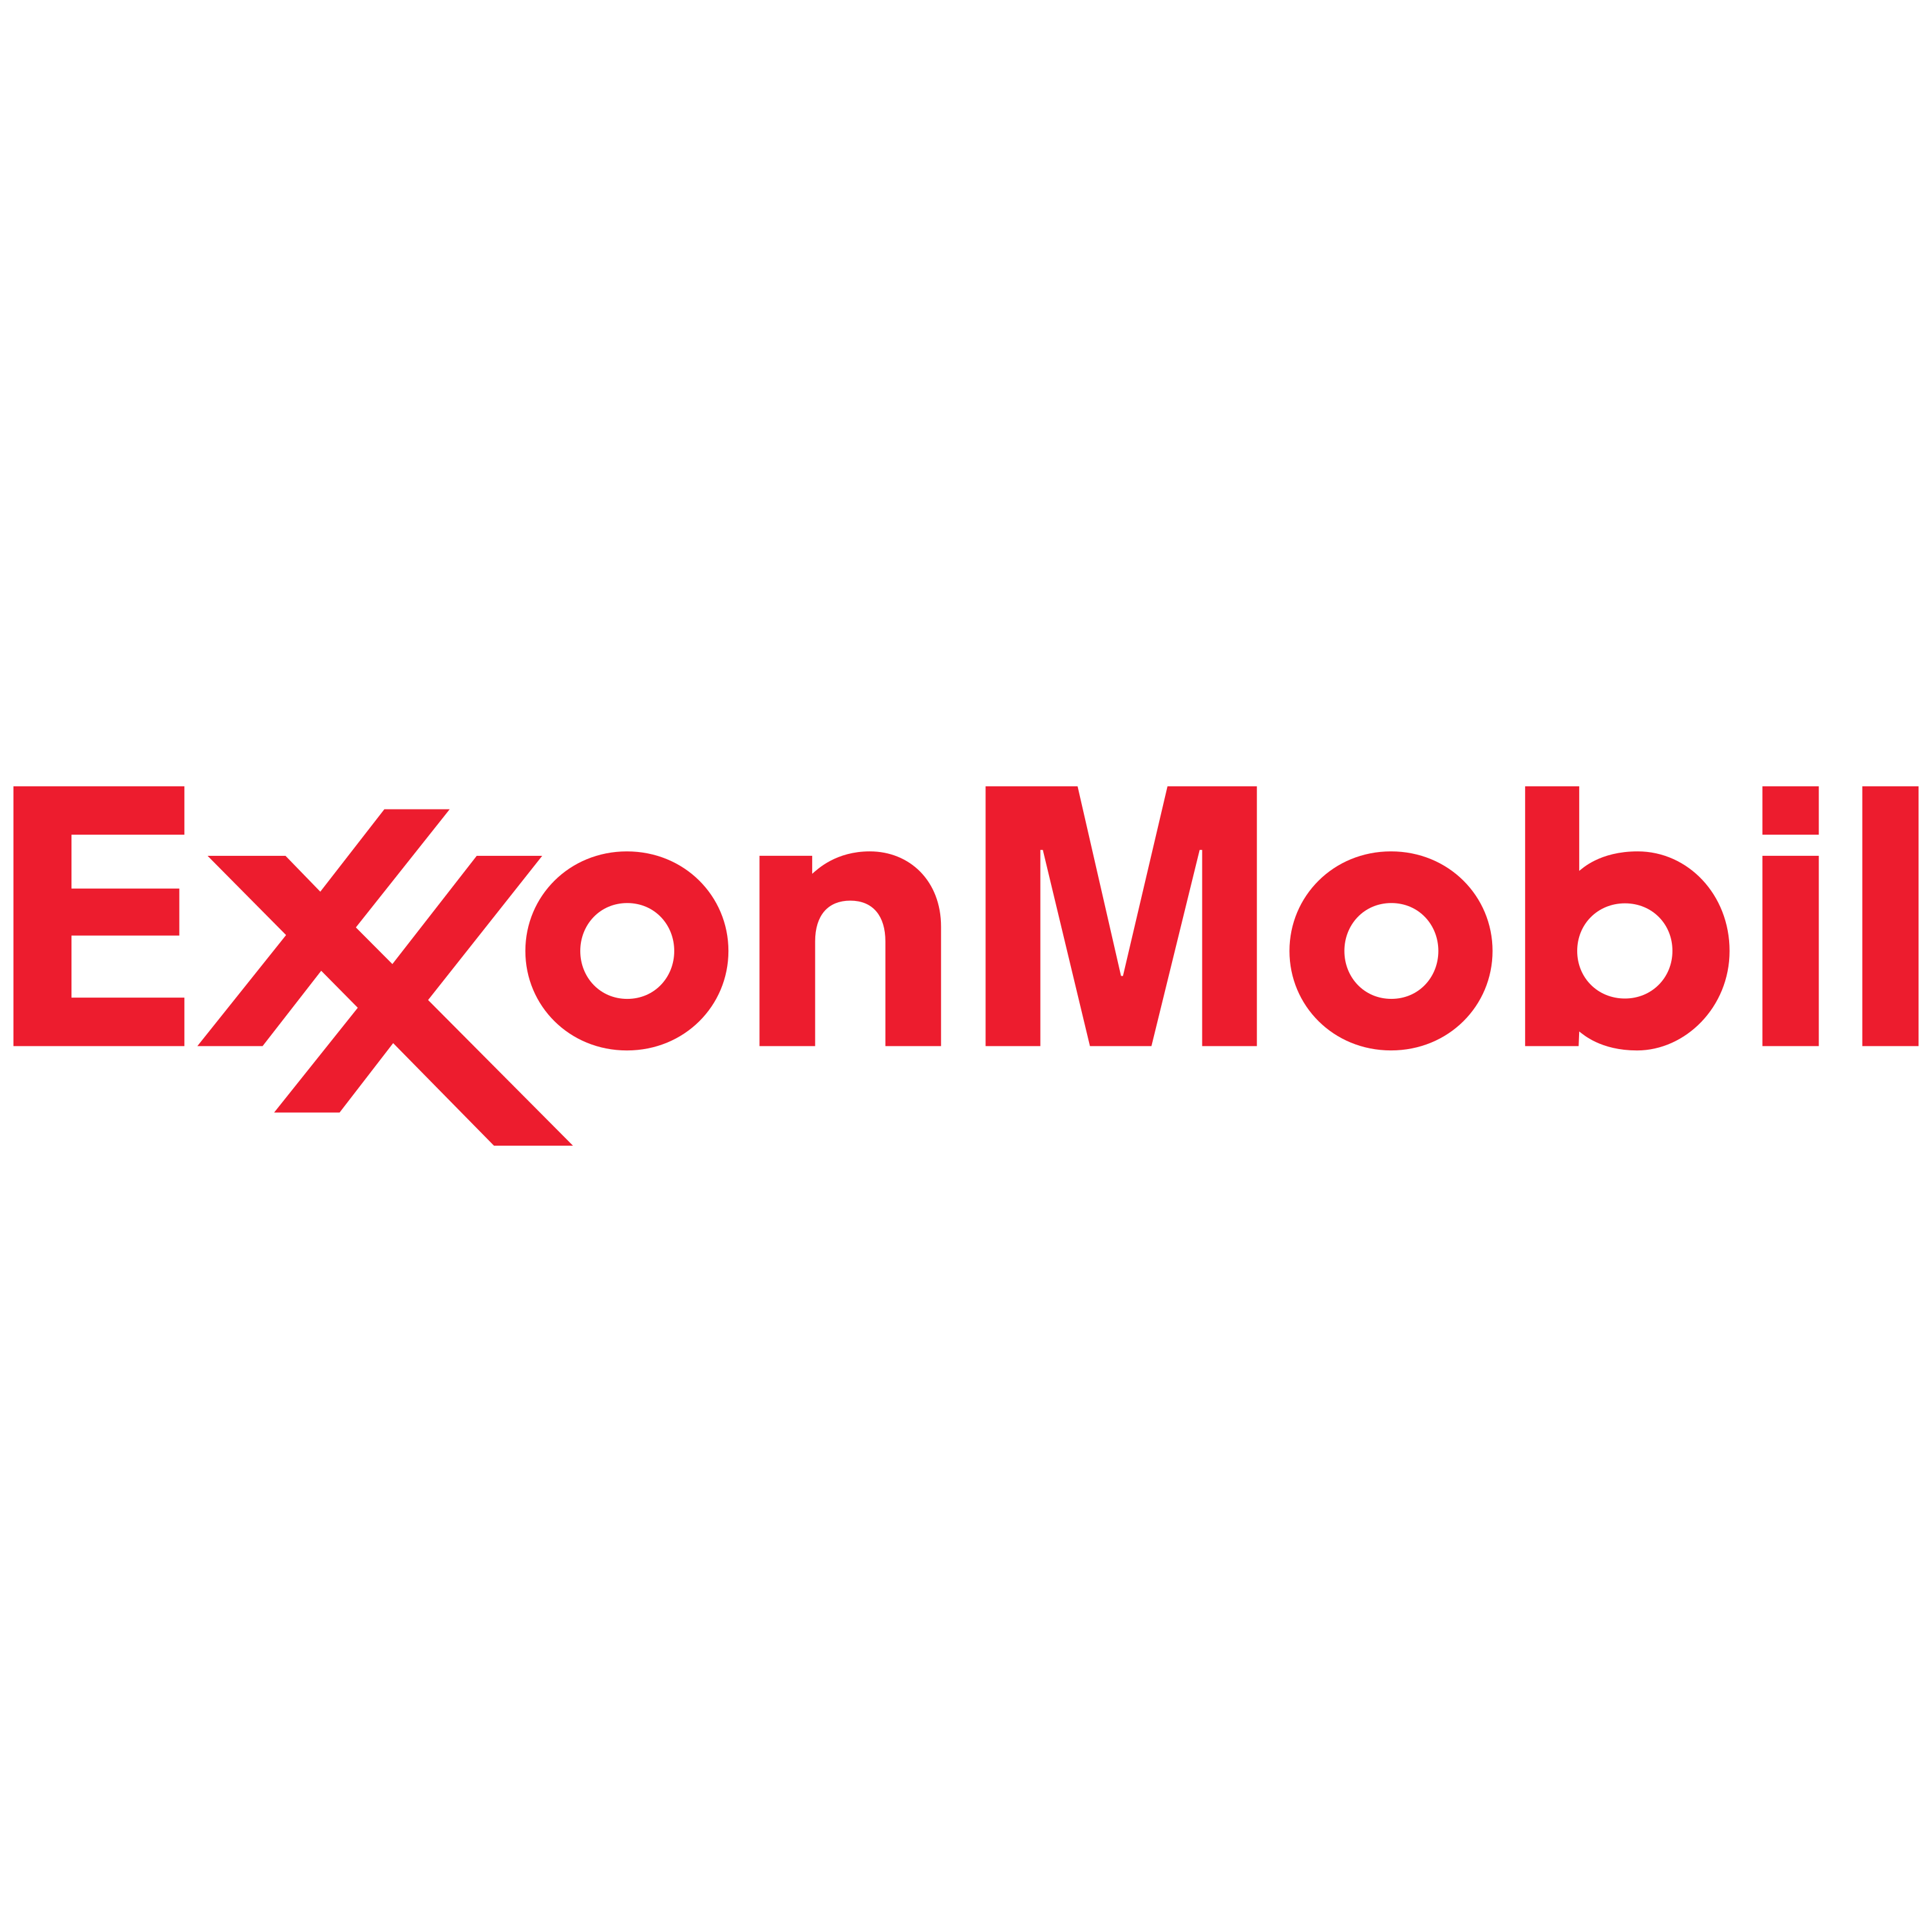 Exxonmobil Logo Transparent Image